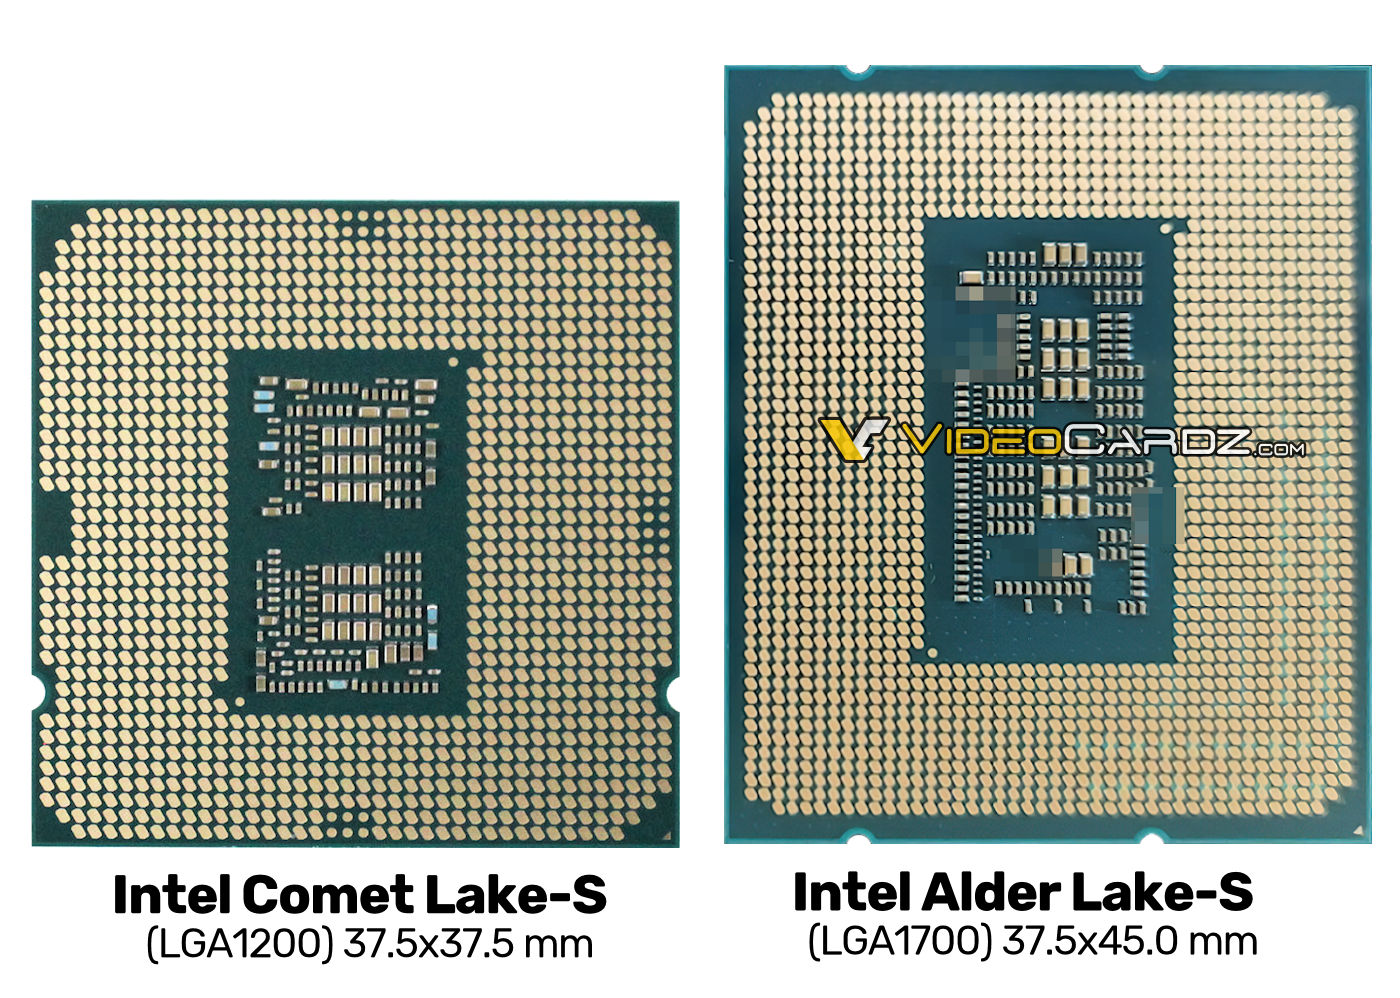 Intel LGA 1200 vs LGA 1700